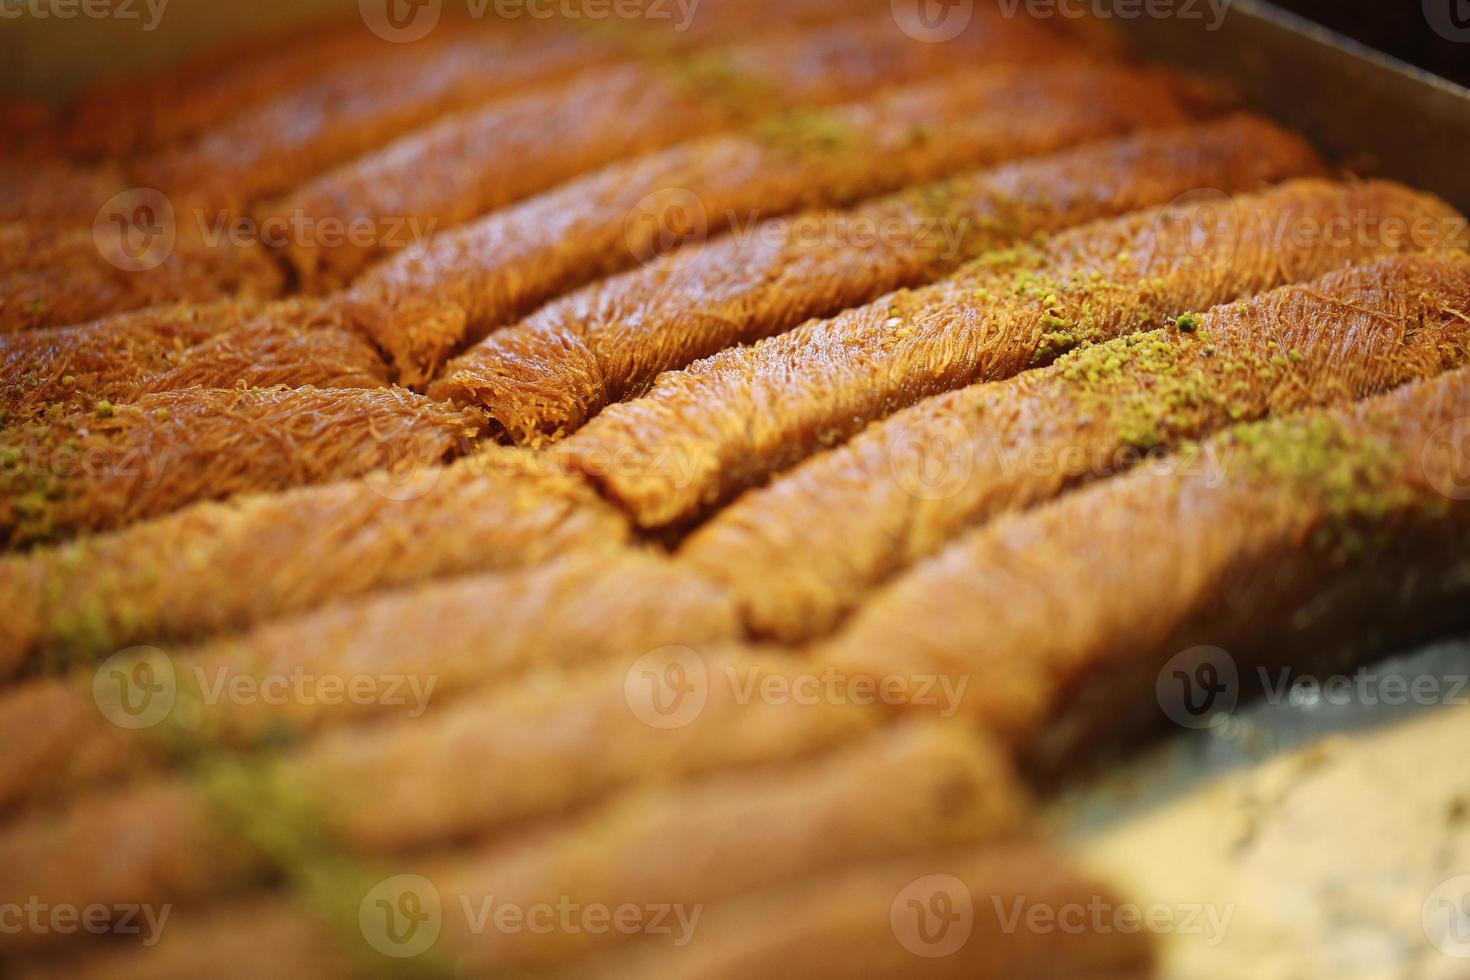 kadayifli birma walnoot, bakkerijproducten, gebak en bakkerij foto